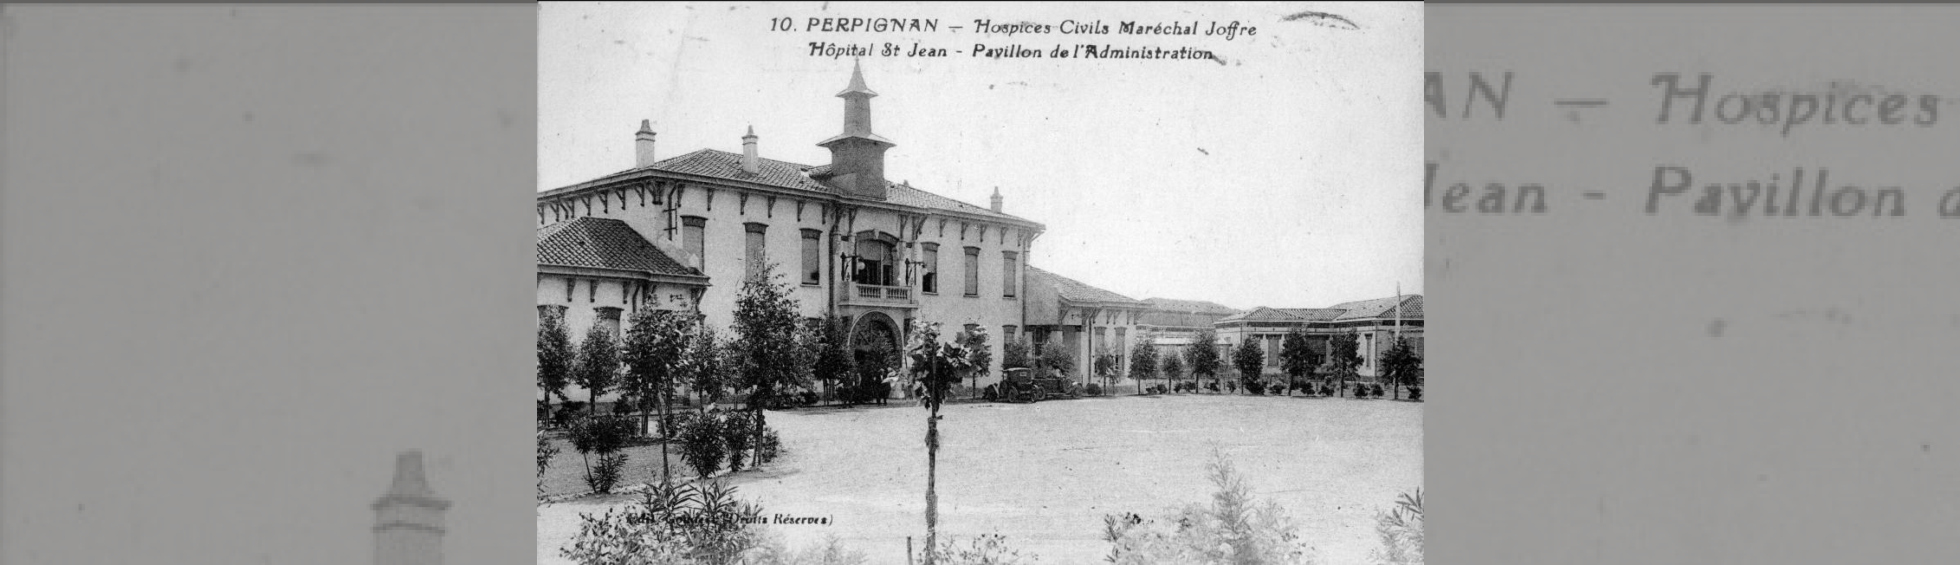 Hôpital  Saint Jean début 20e siècle,le batiment administratif